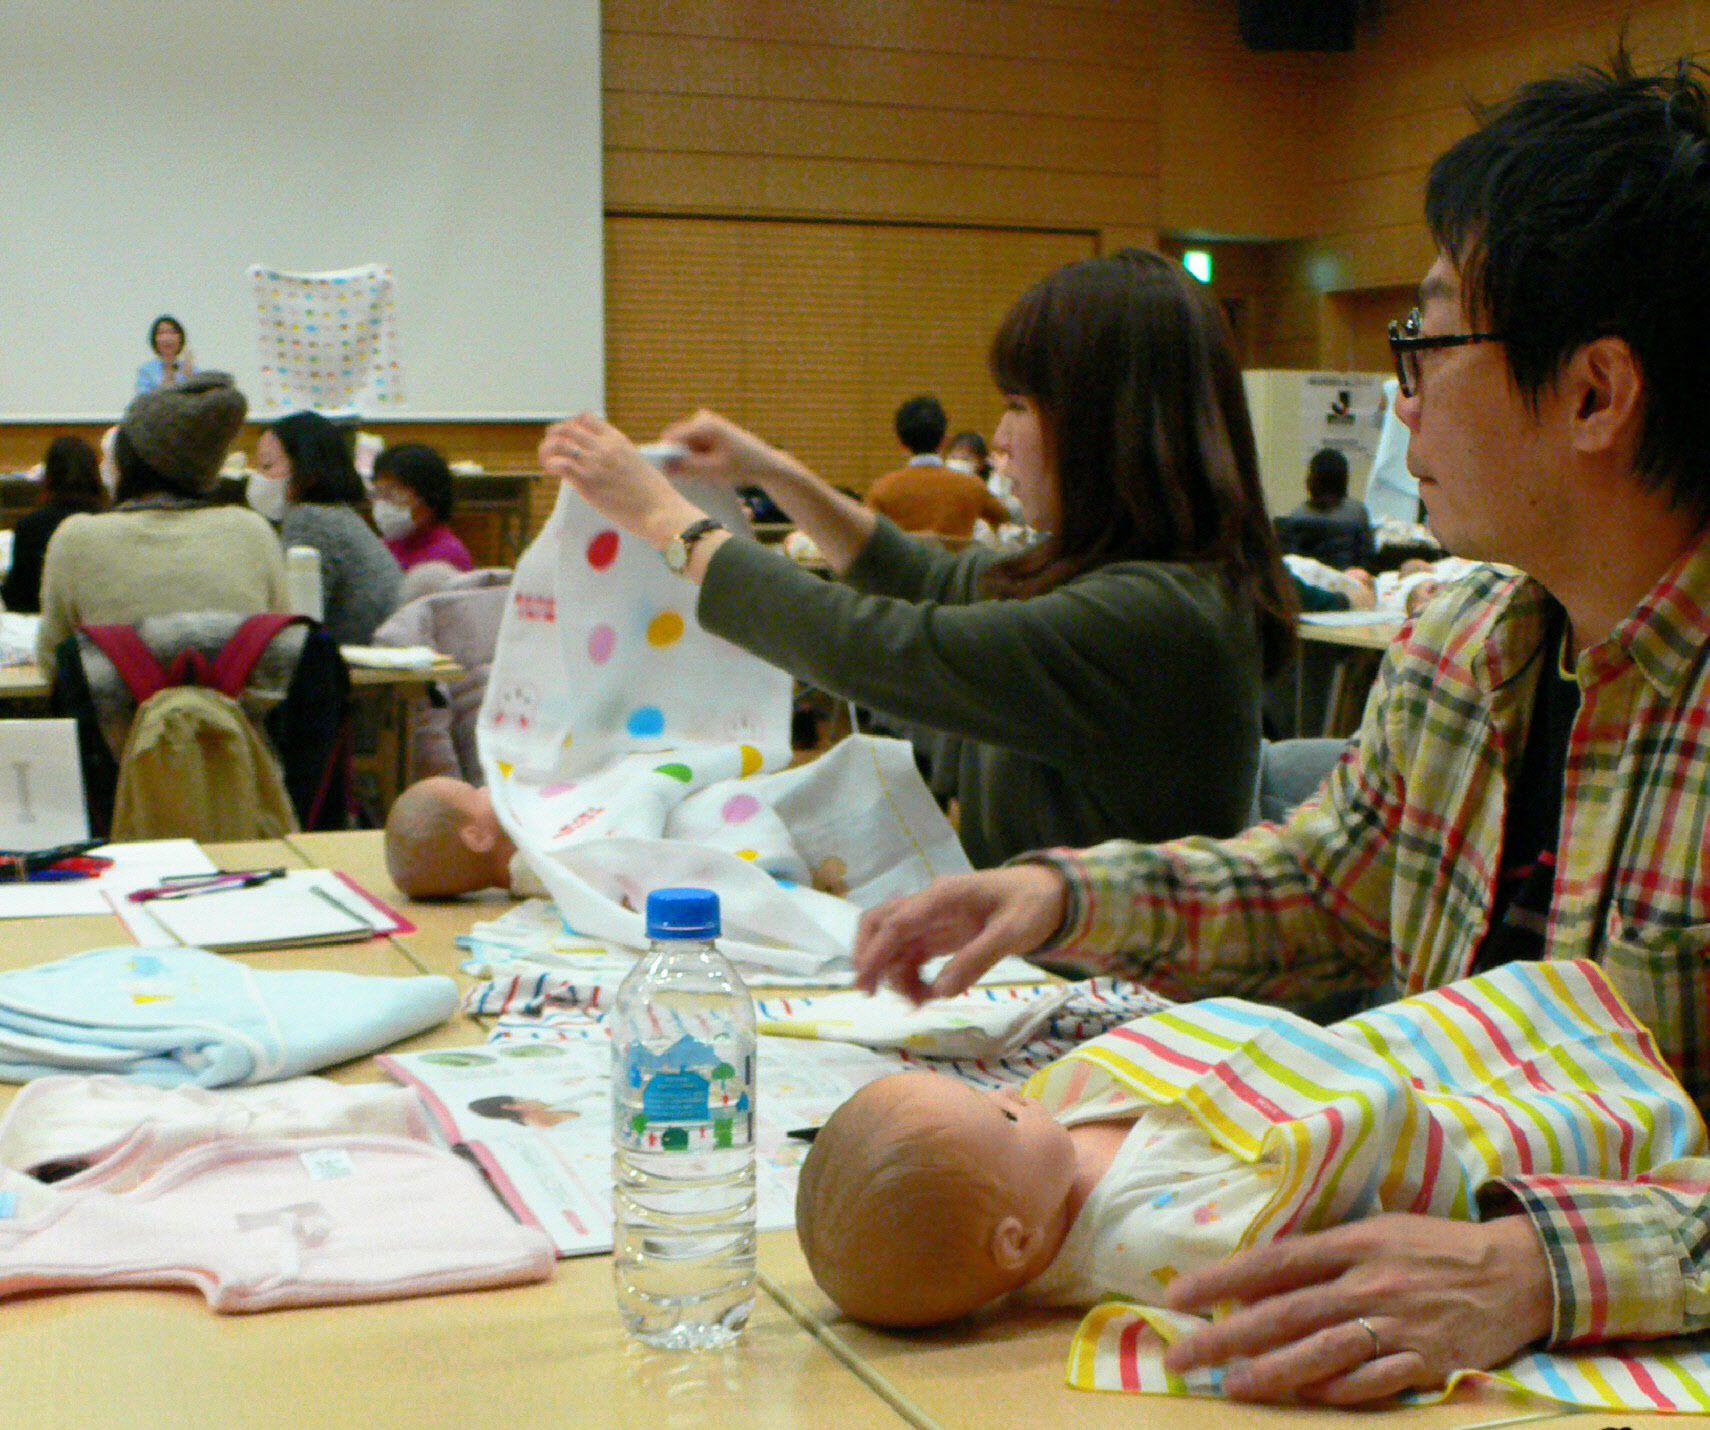 出産前の夫婦を対象にしたセミナーで乳児の世話の仕方を学ぶ男性(右)